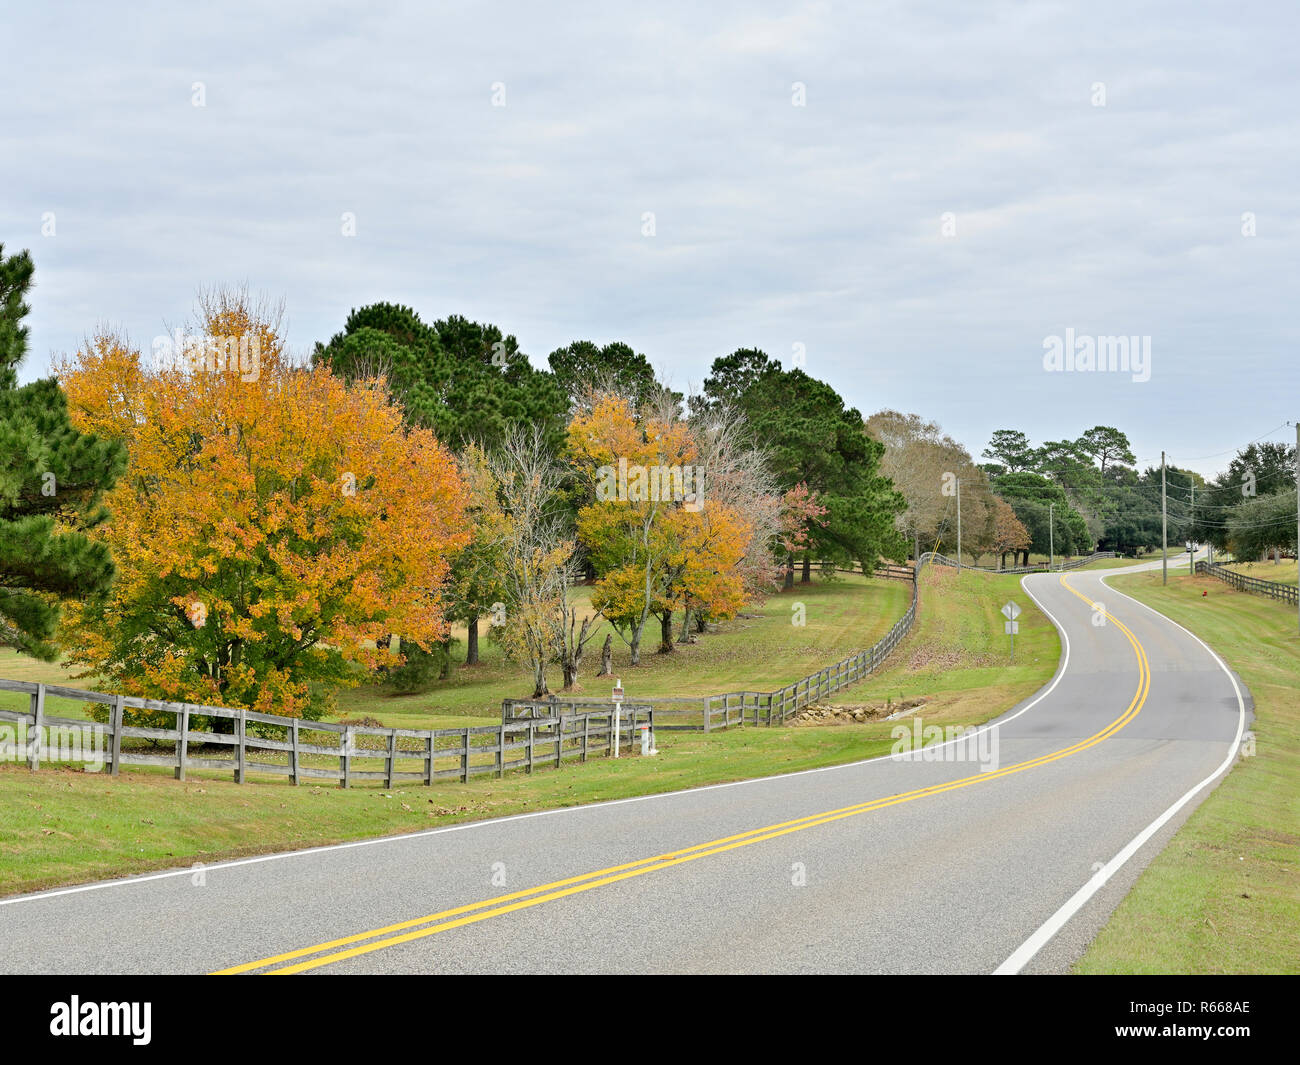 Tranquilo serpenteantes carreteras o lane con una valla de ferrocarril dividida y árboles cambiando en colores de otoño en el sur de Alabama, Estados Unidos. Foto de stock